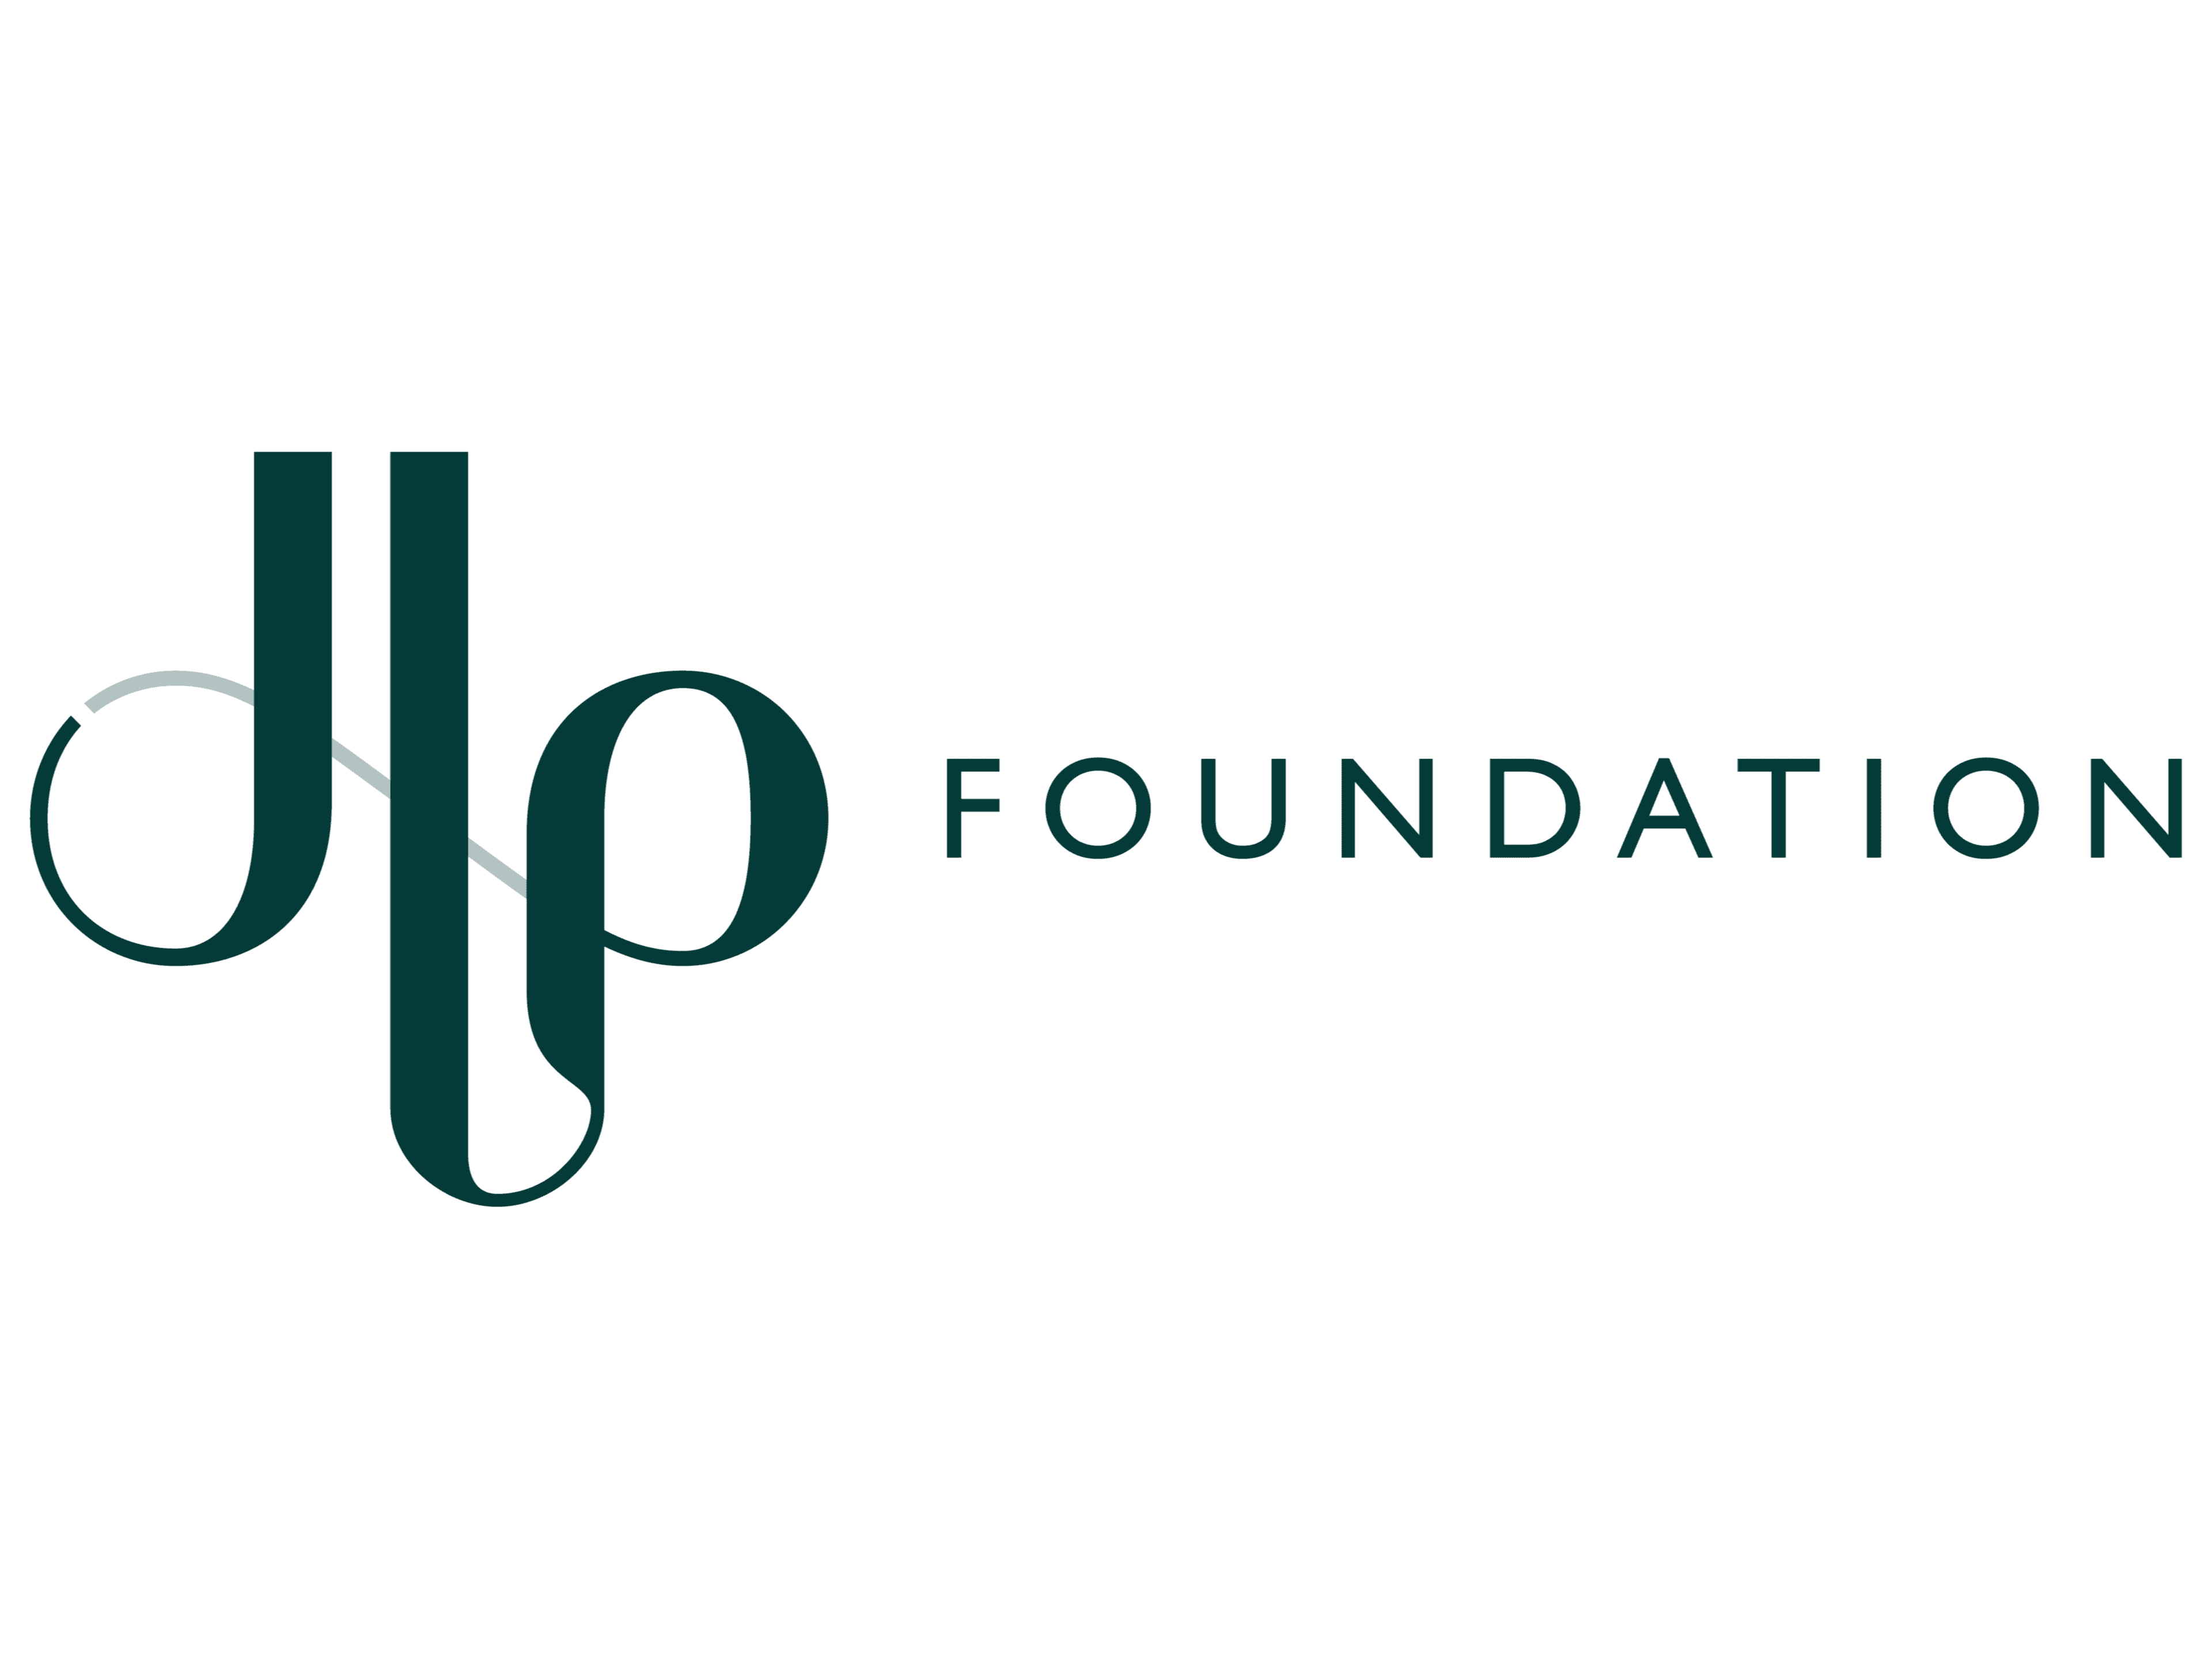 Image of John Lewis Partnership Foundation.